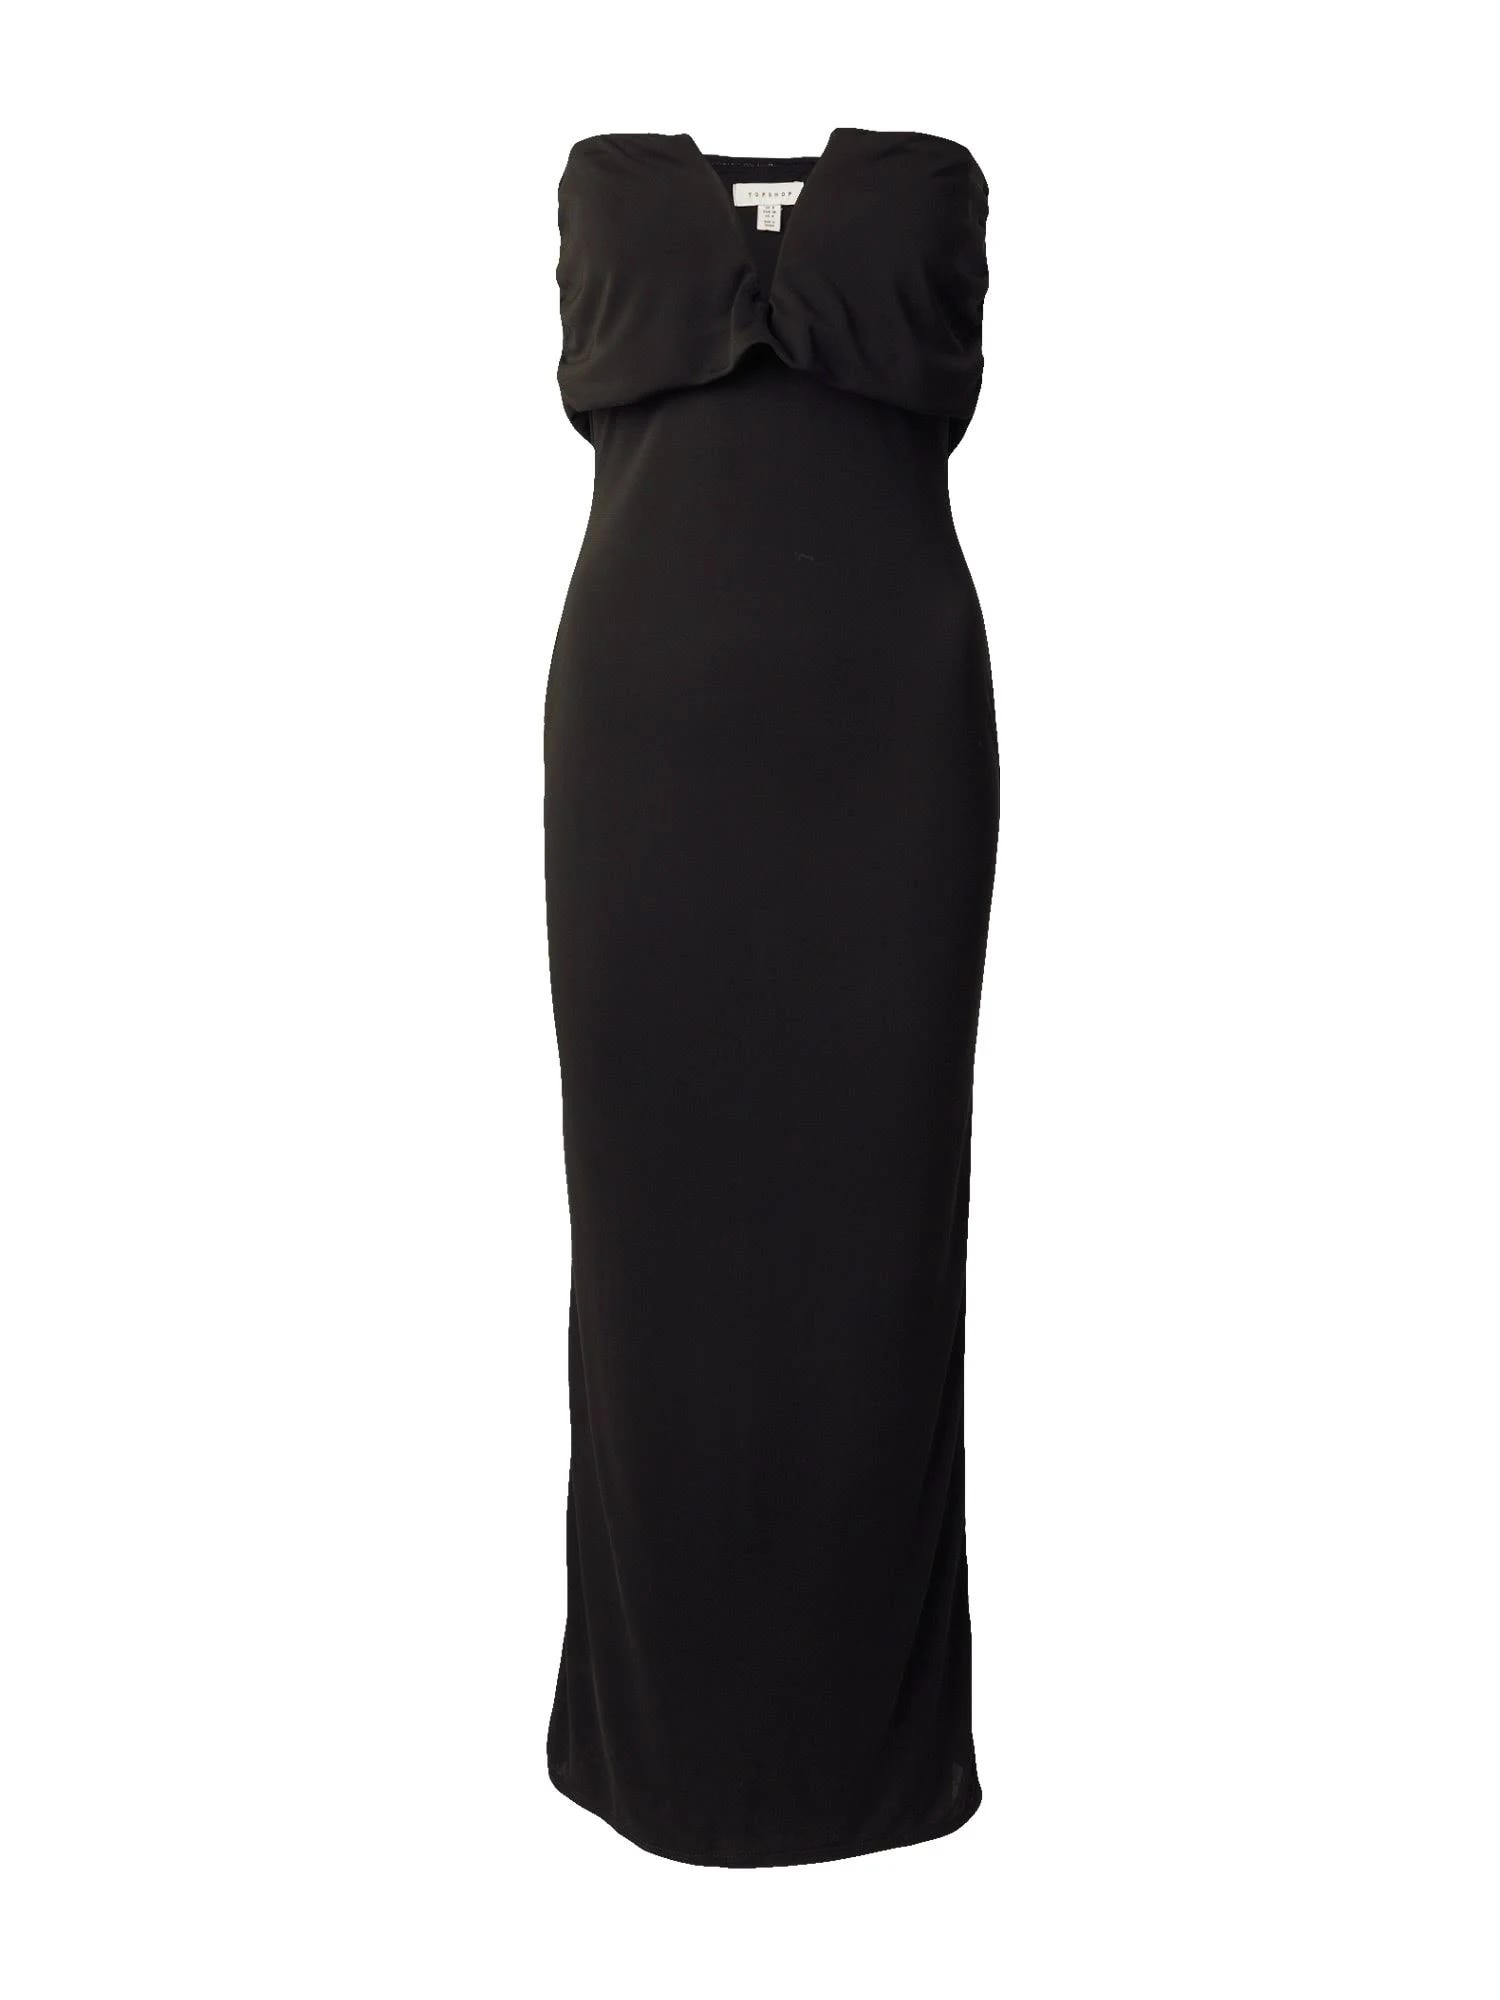 Sleek Off-Shoulder Black Mididress with Notched Neckline | Image